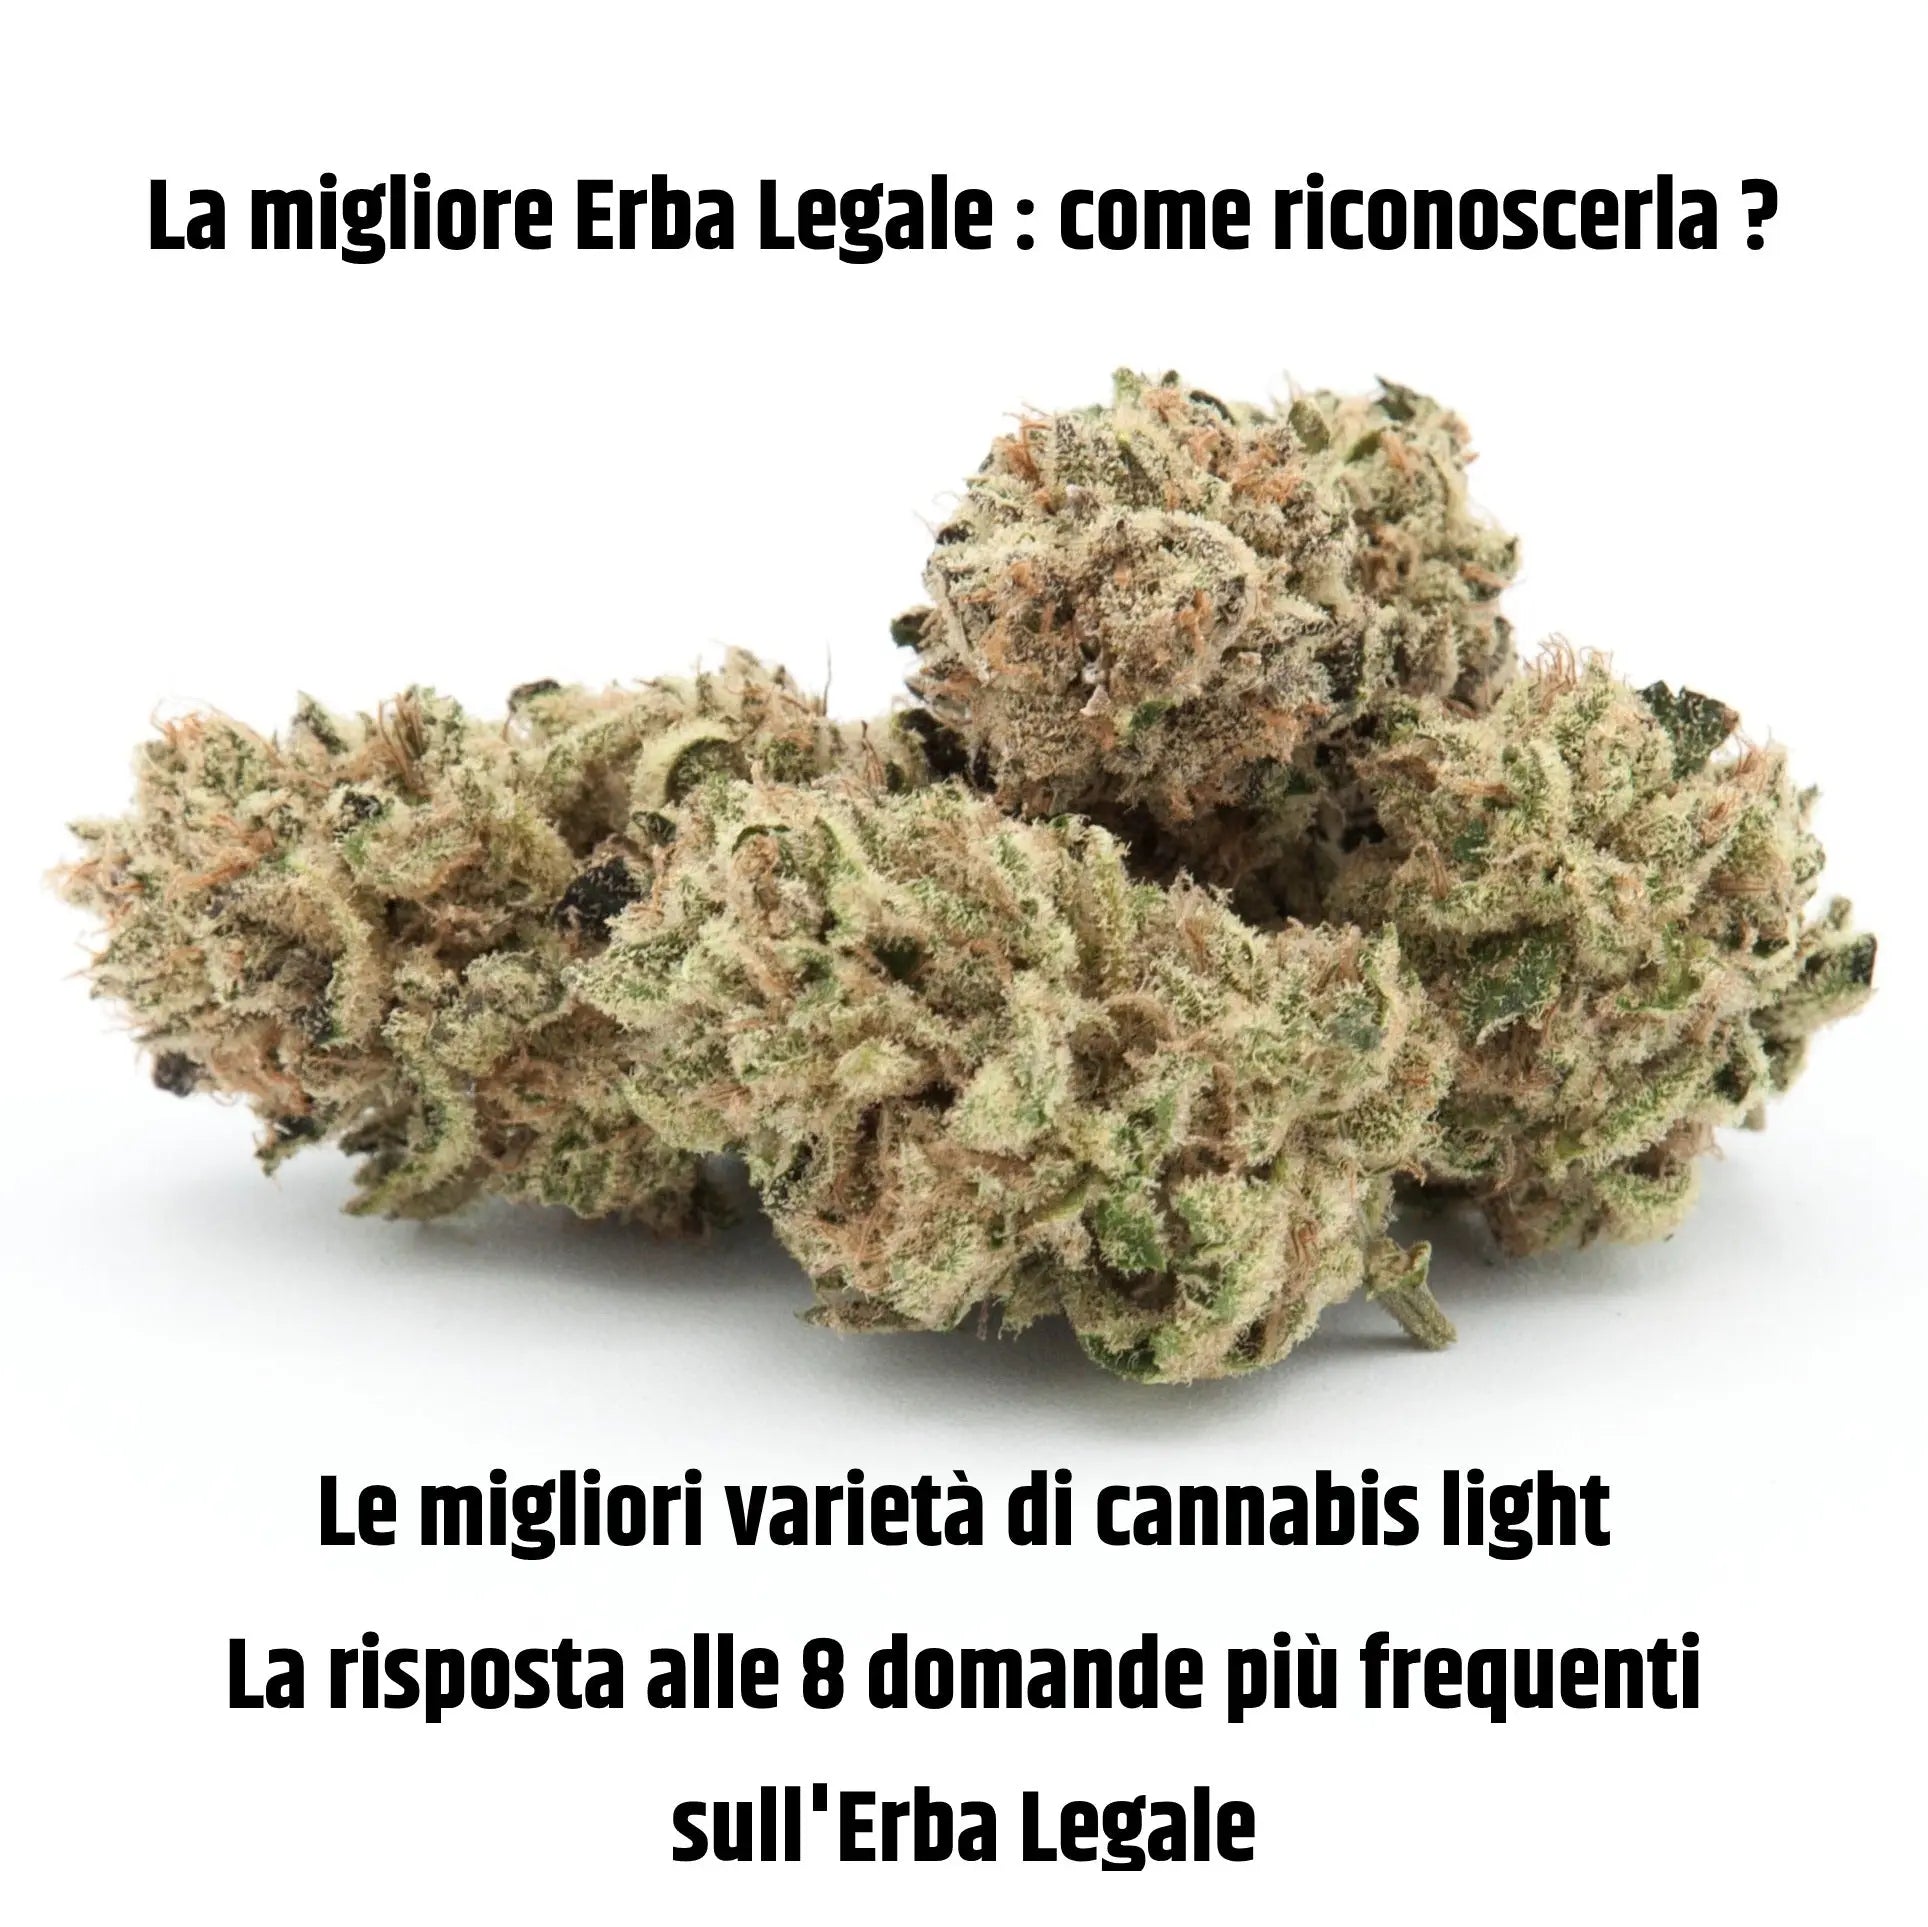 https://cdn.shopify.com/s/files/1/0550/6957/3164/articles/La_migliore_Erba_Legale_dolomiticannabis.jpg?v=1691506443